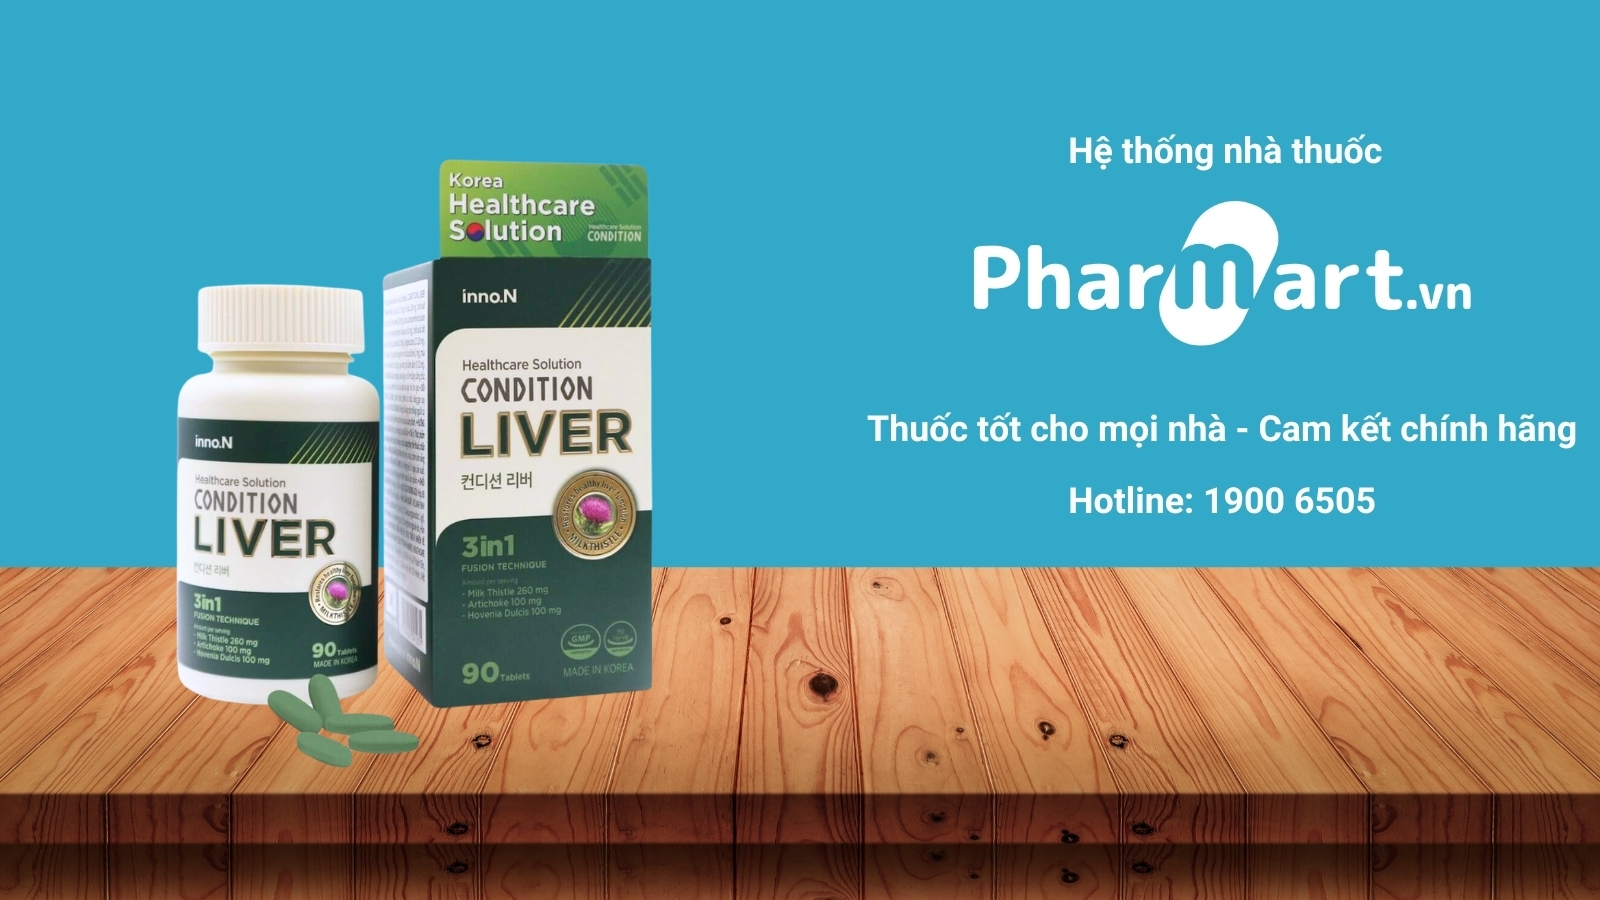 Mua ngay Condition Liver chính hãng tại Pharmart.vn